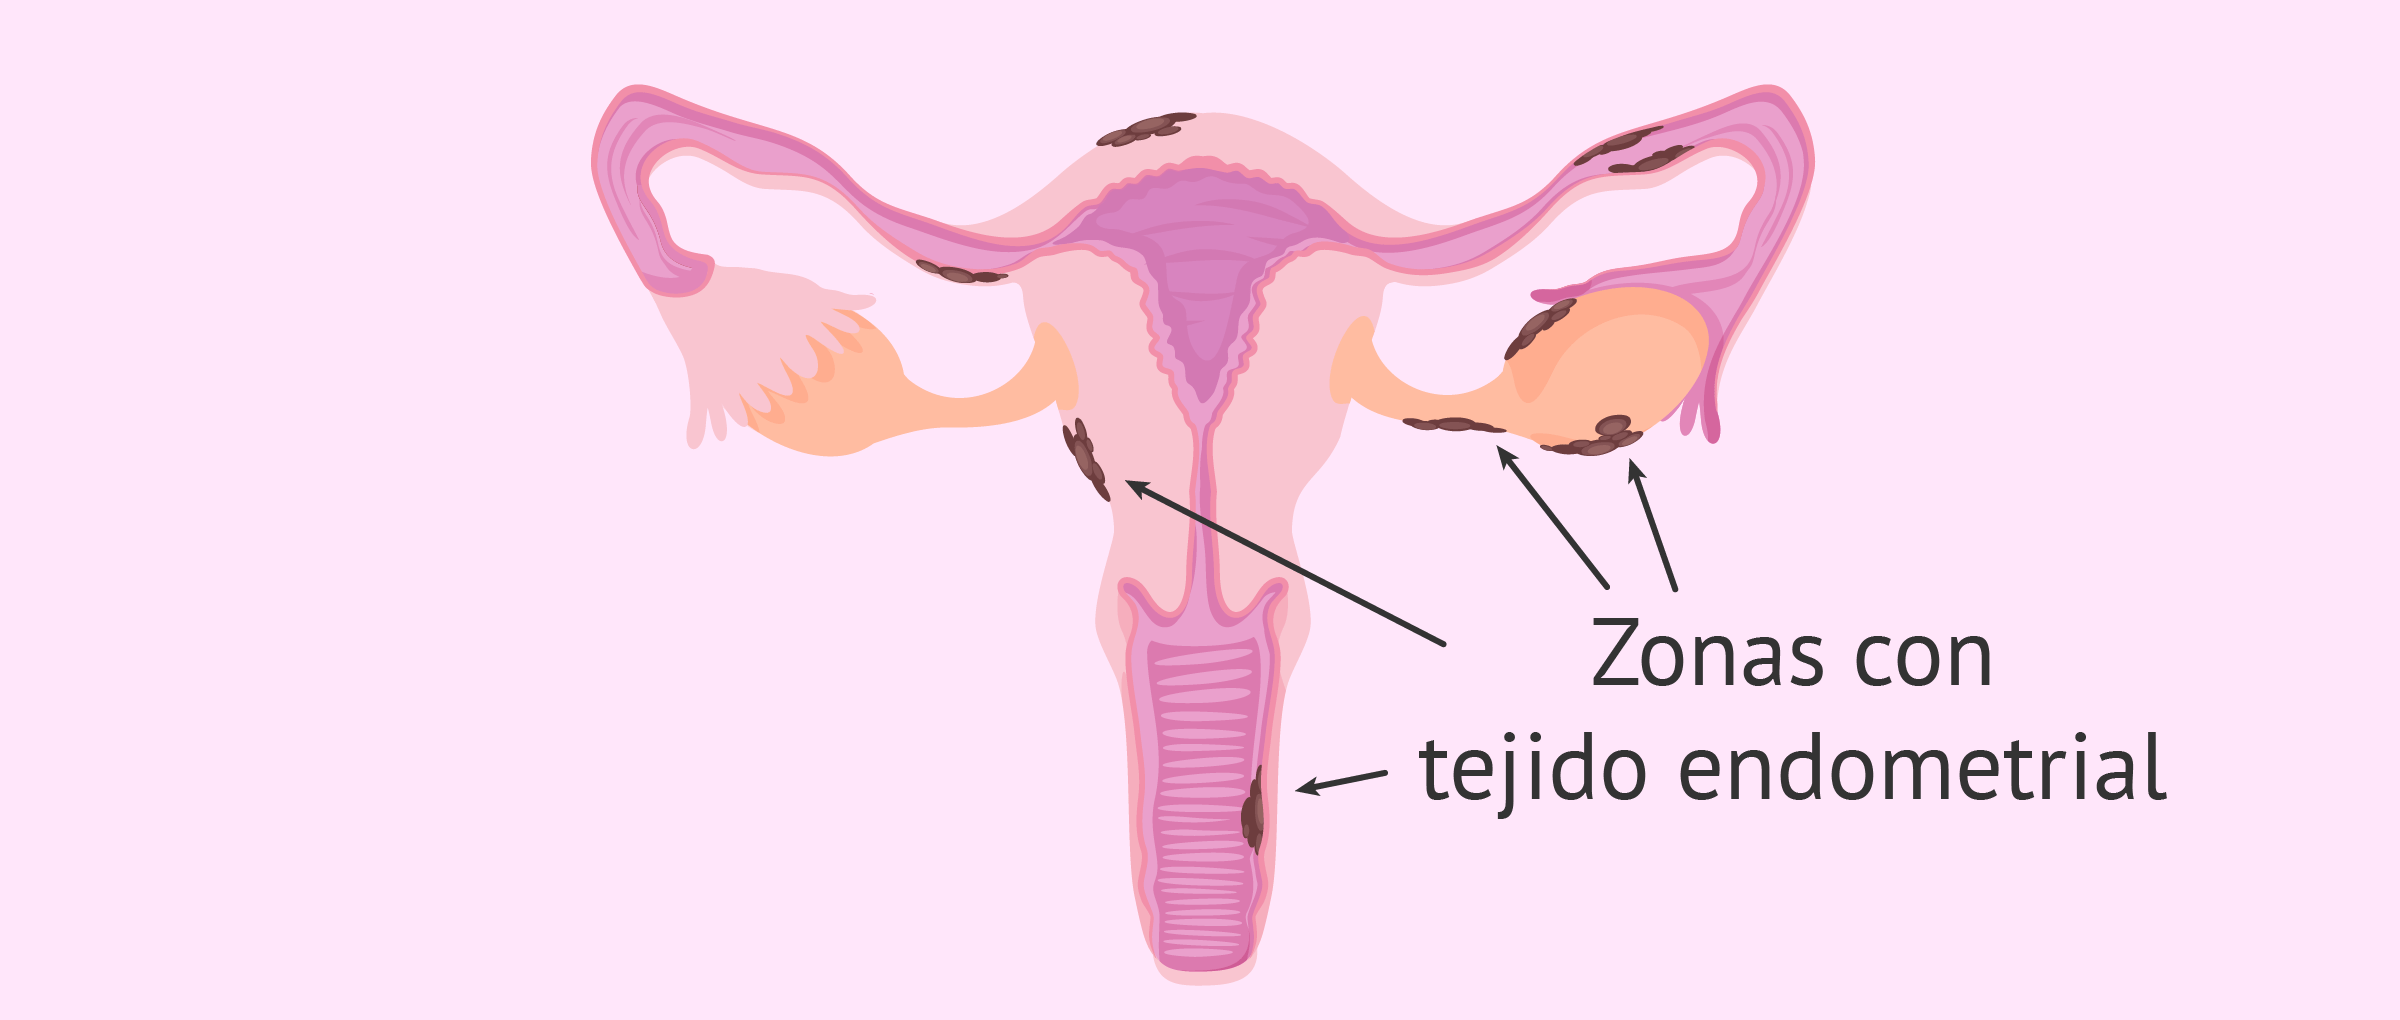 Localización de los implantes endometriales